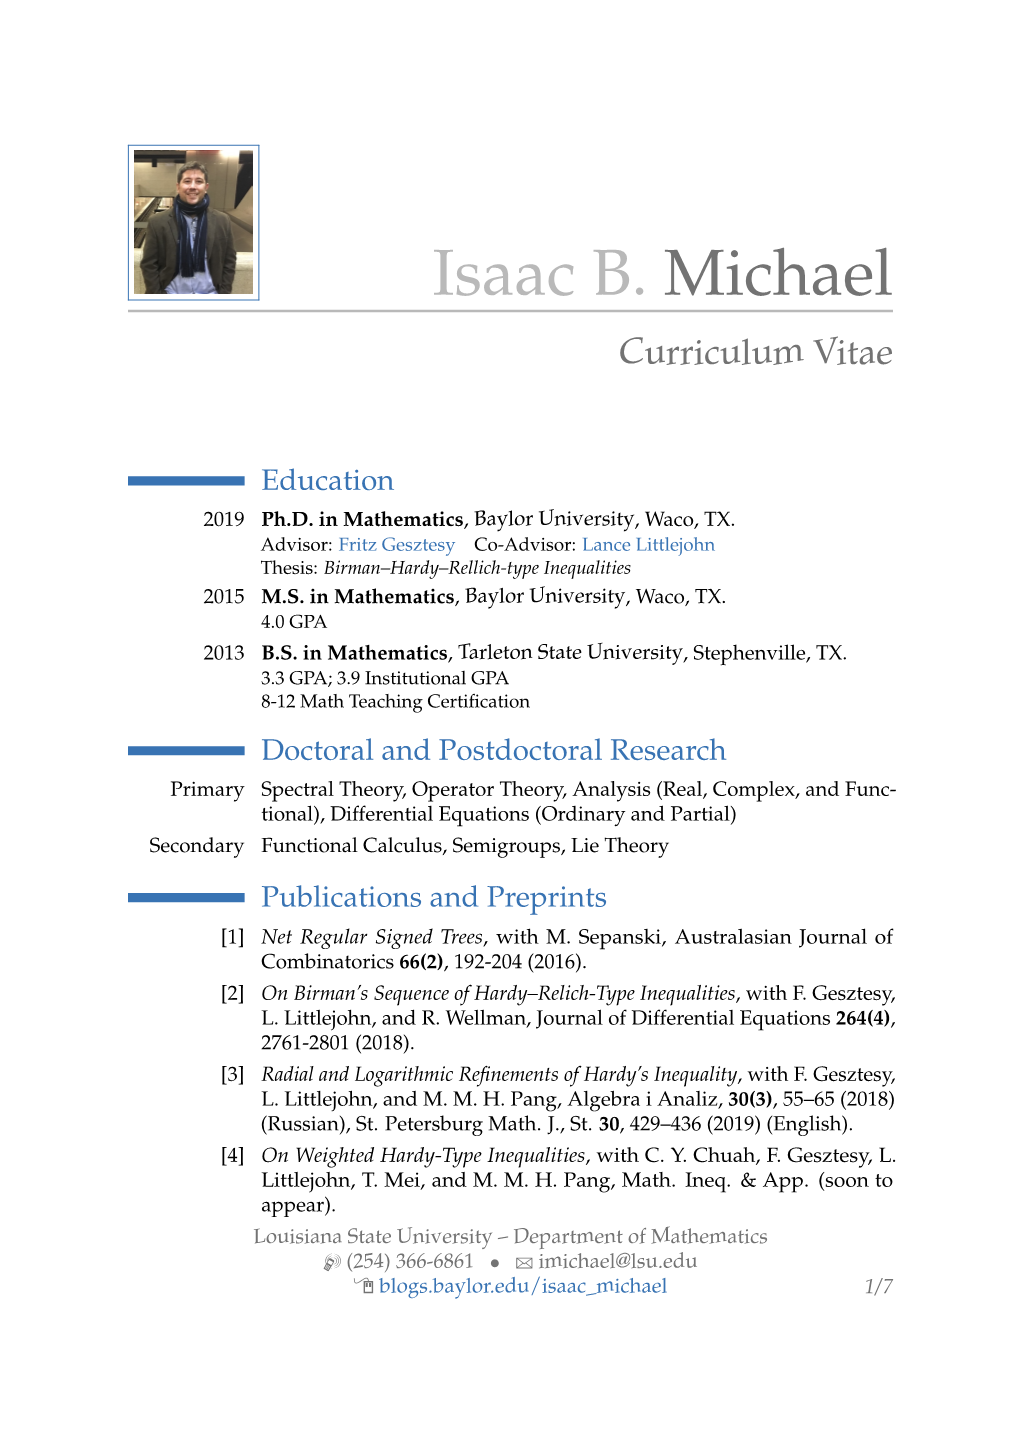 Isaac B. Michael – Curriculum Vitae